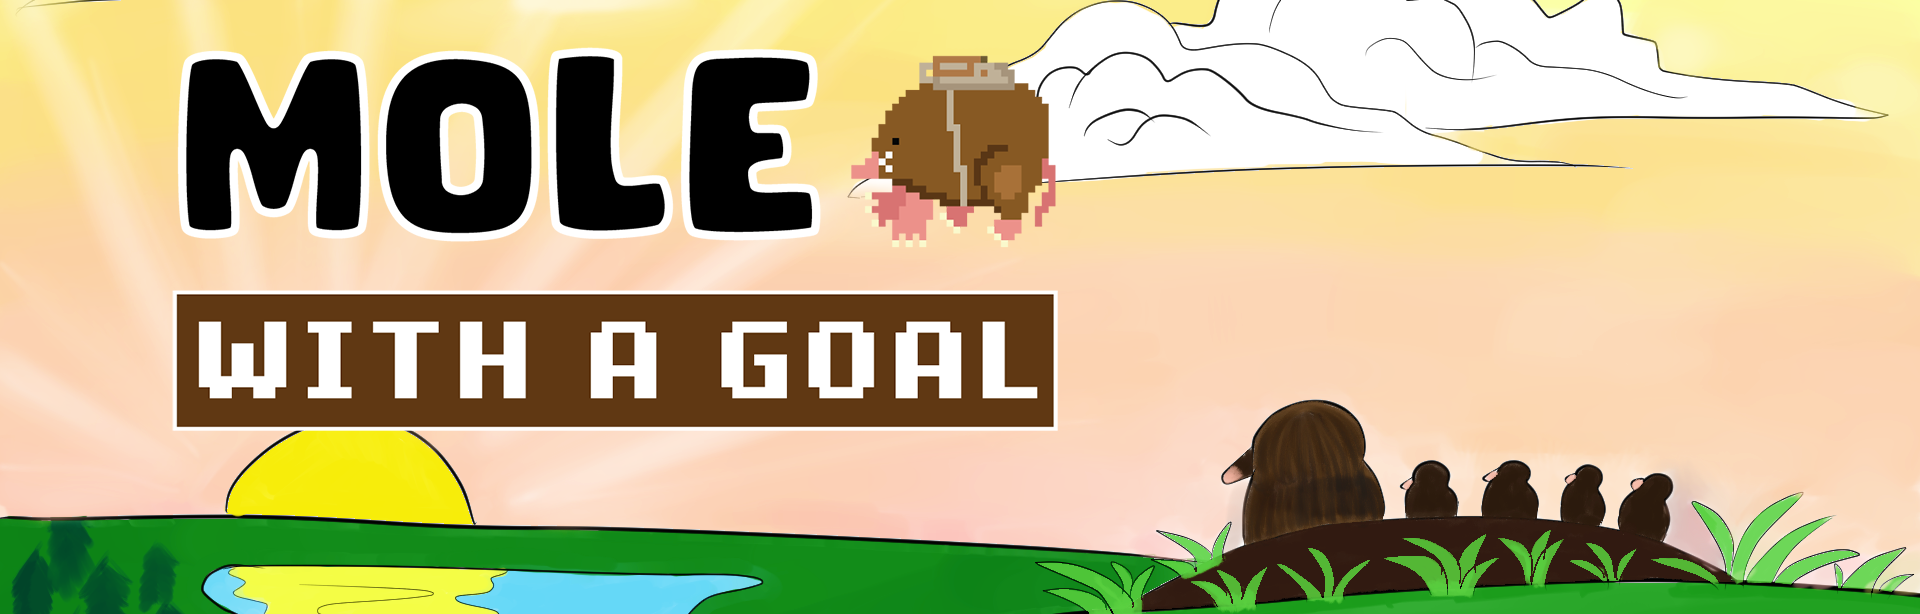 Mole with a Goal